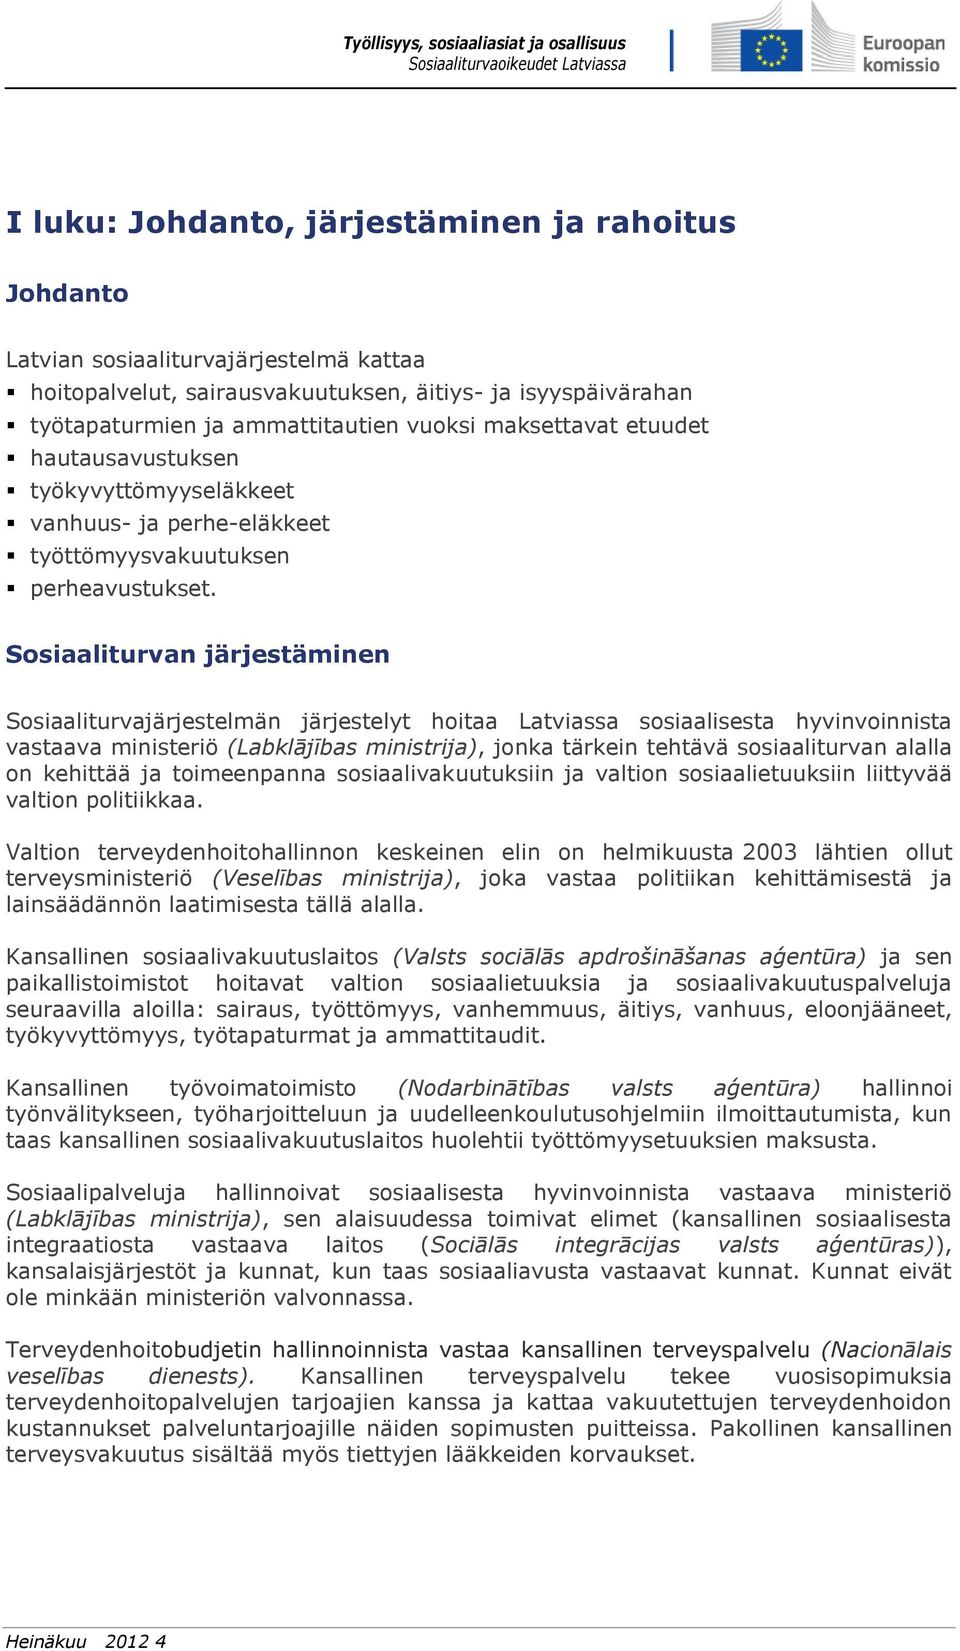 Sosiaaliturvan järjestäminen Sosiaaliturvajärjestelmän järjestelyt hoitaa Latviassa sosiaalisesta hyvinvoinnista vastaava ministeriö (Labklājības ministrija), jonka tärkein tehtävä sosiaaliturvan